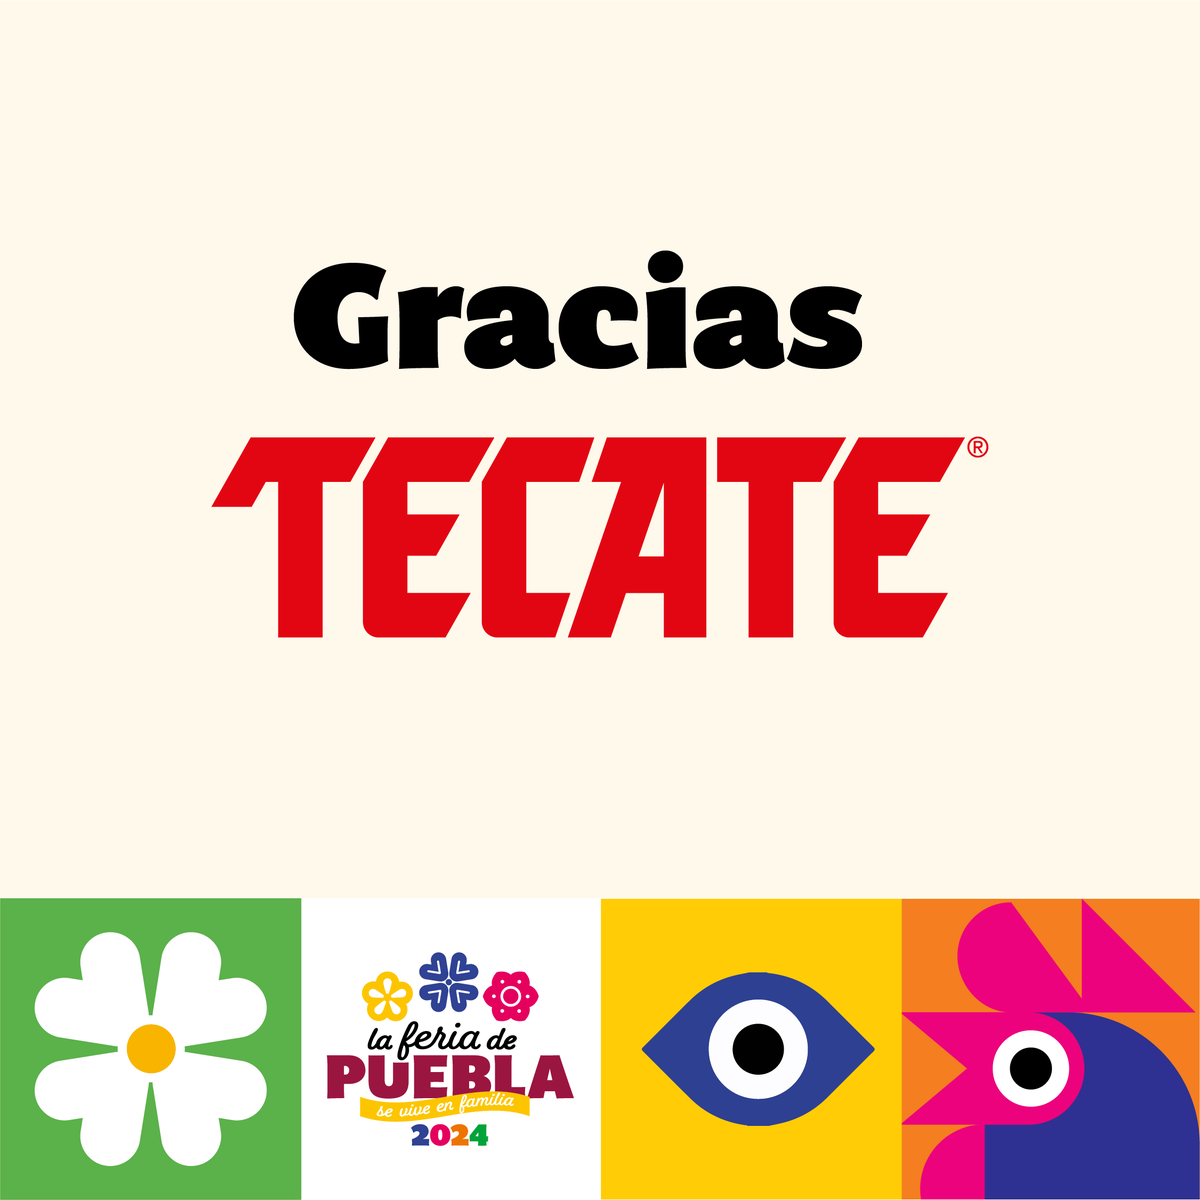 🤩 Gracias Tecate, por ser patrocinador oficial de la Feria de Puebla 2024. 👏 ¡Juntos creamos momentos increíbles!🎉 #FeriadePuebla2024